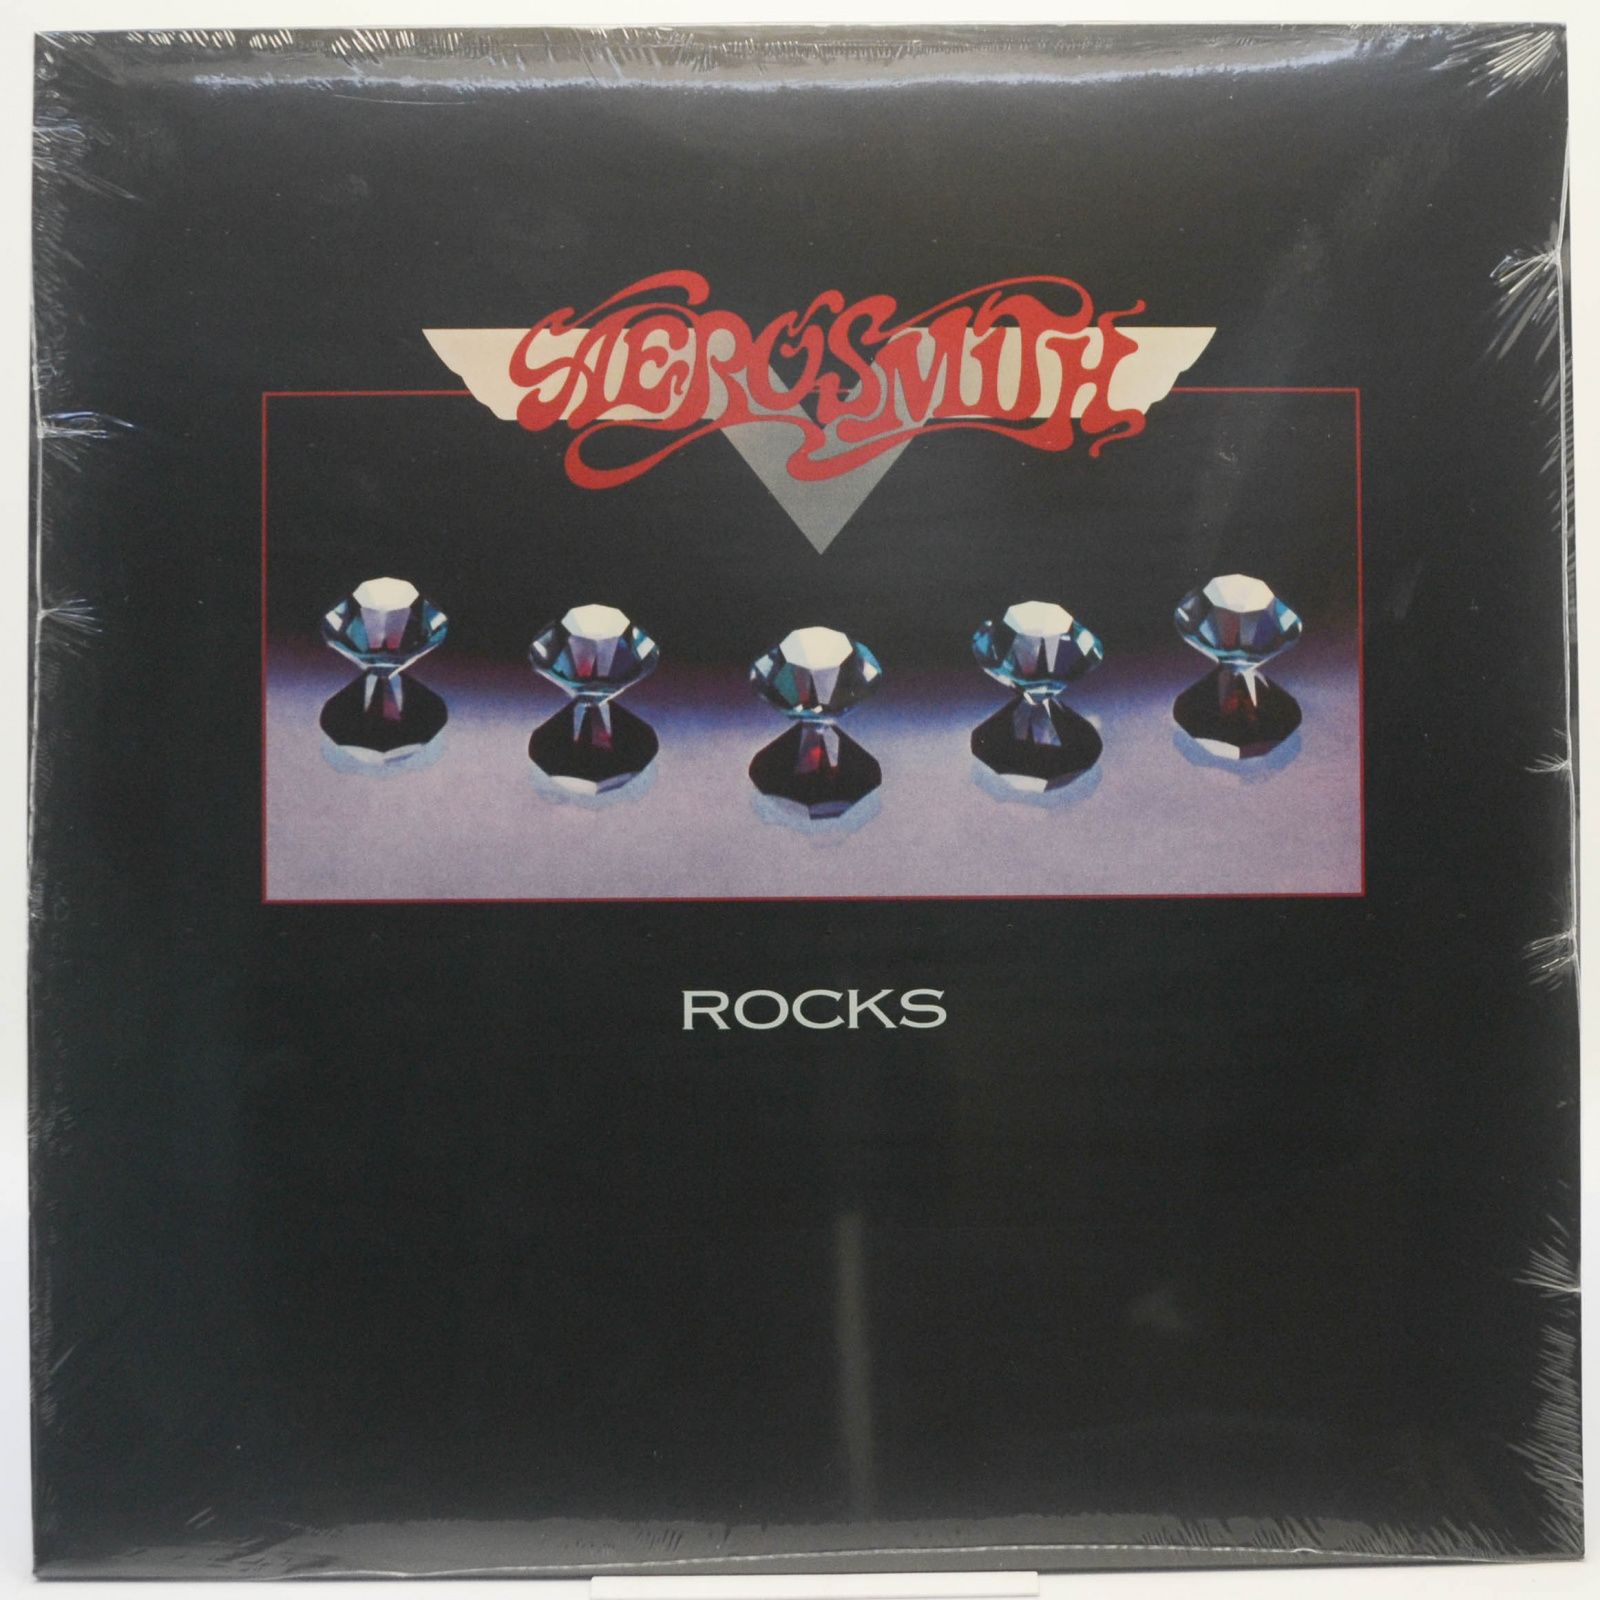 Rocks, 1976